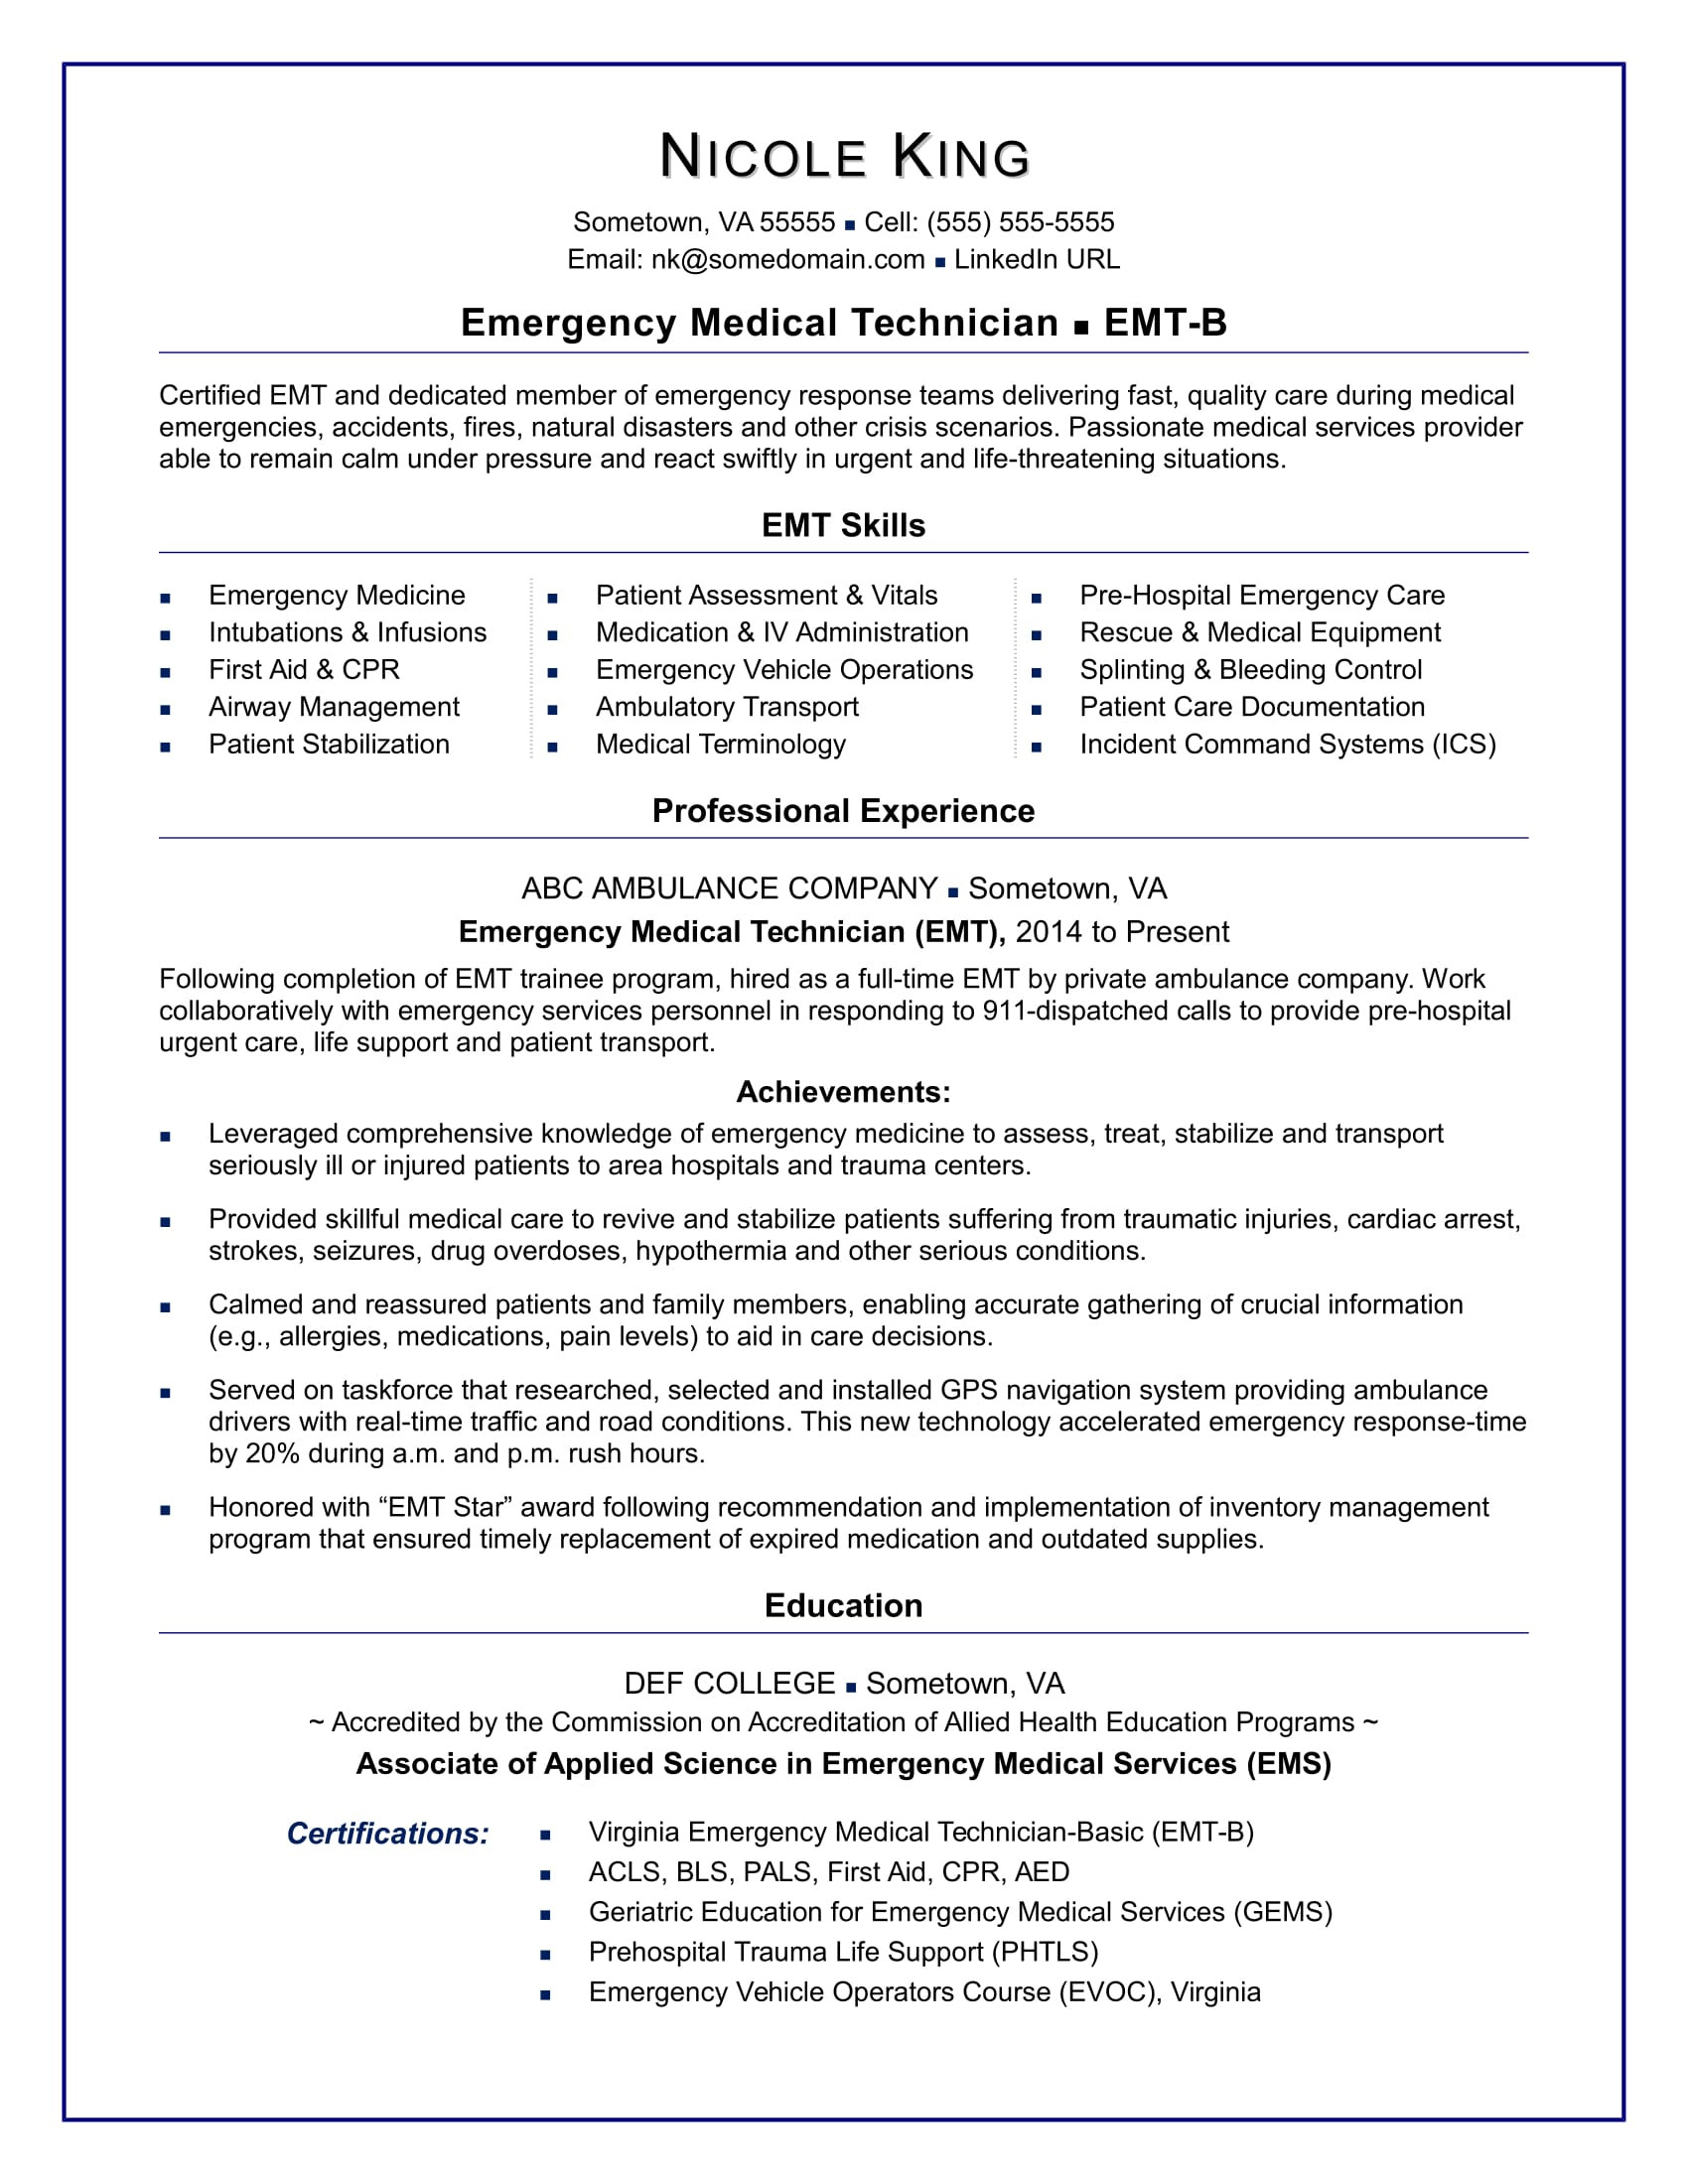 Sample Resume Entry Level Medical Inventory Emt Resume Sample Monster.com